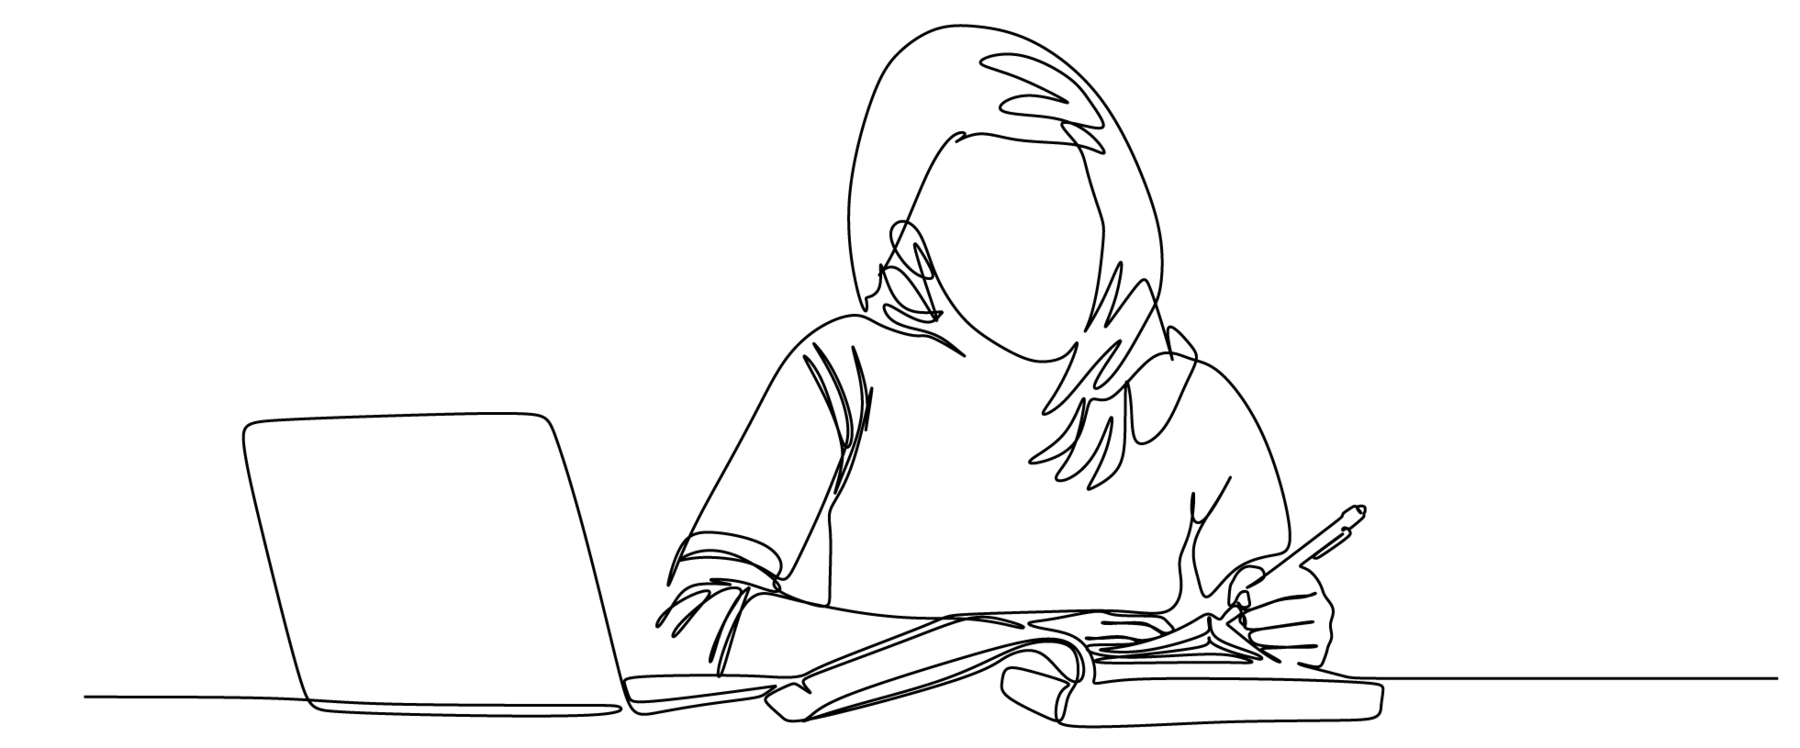 Ilustração. Desenho feito com linha preta fina e contínua sobre fundo branco. A linha surge no canto inferior esquerdo, dá voltas e some no canto inferior direito, formando a imagem de uma mulher sentada em uma mesa escrevendo em um caderno e com um notebook aberto ao seu lado.